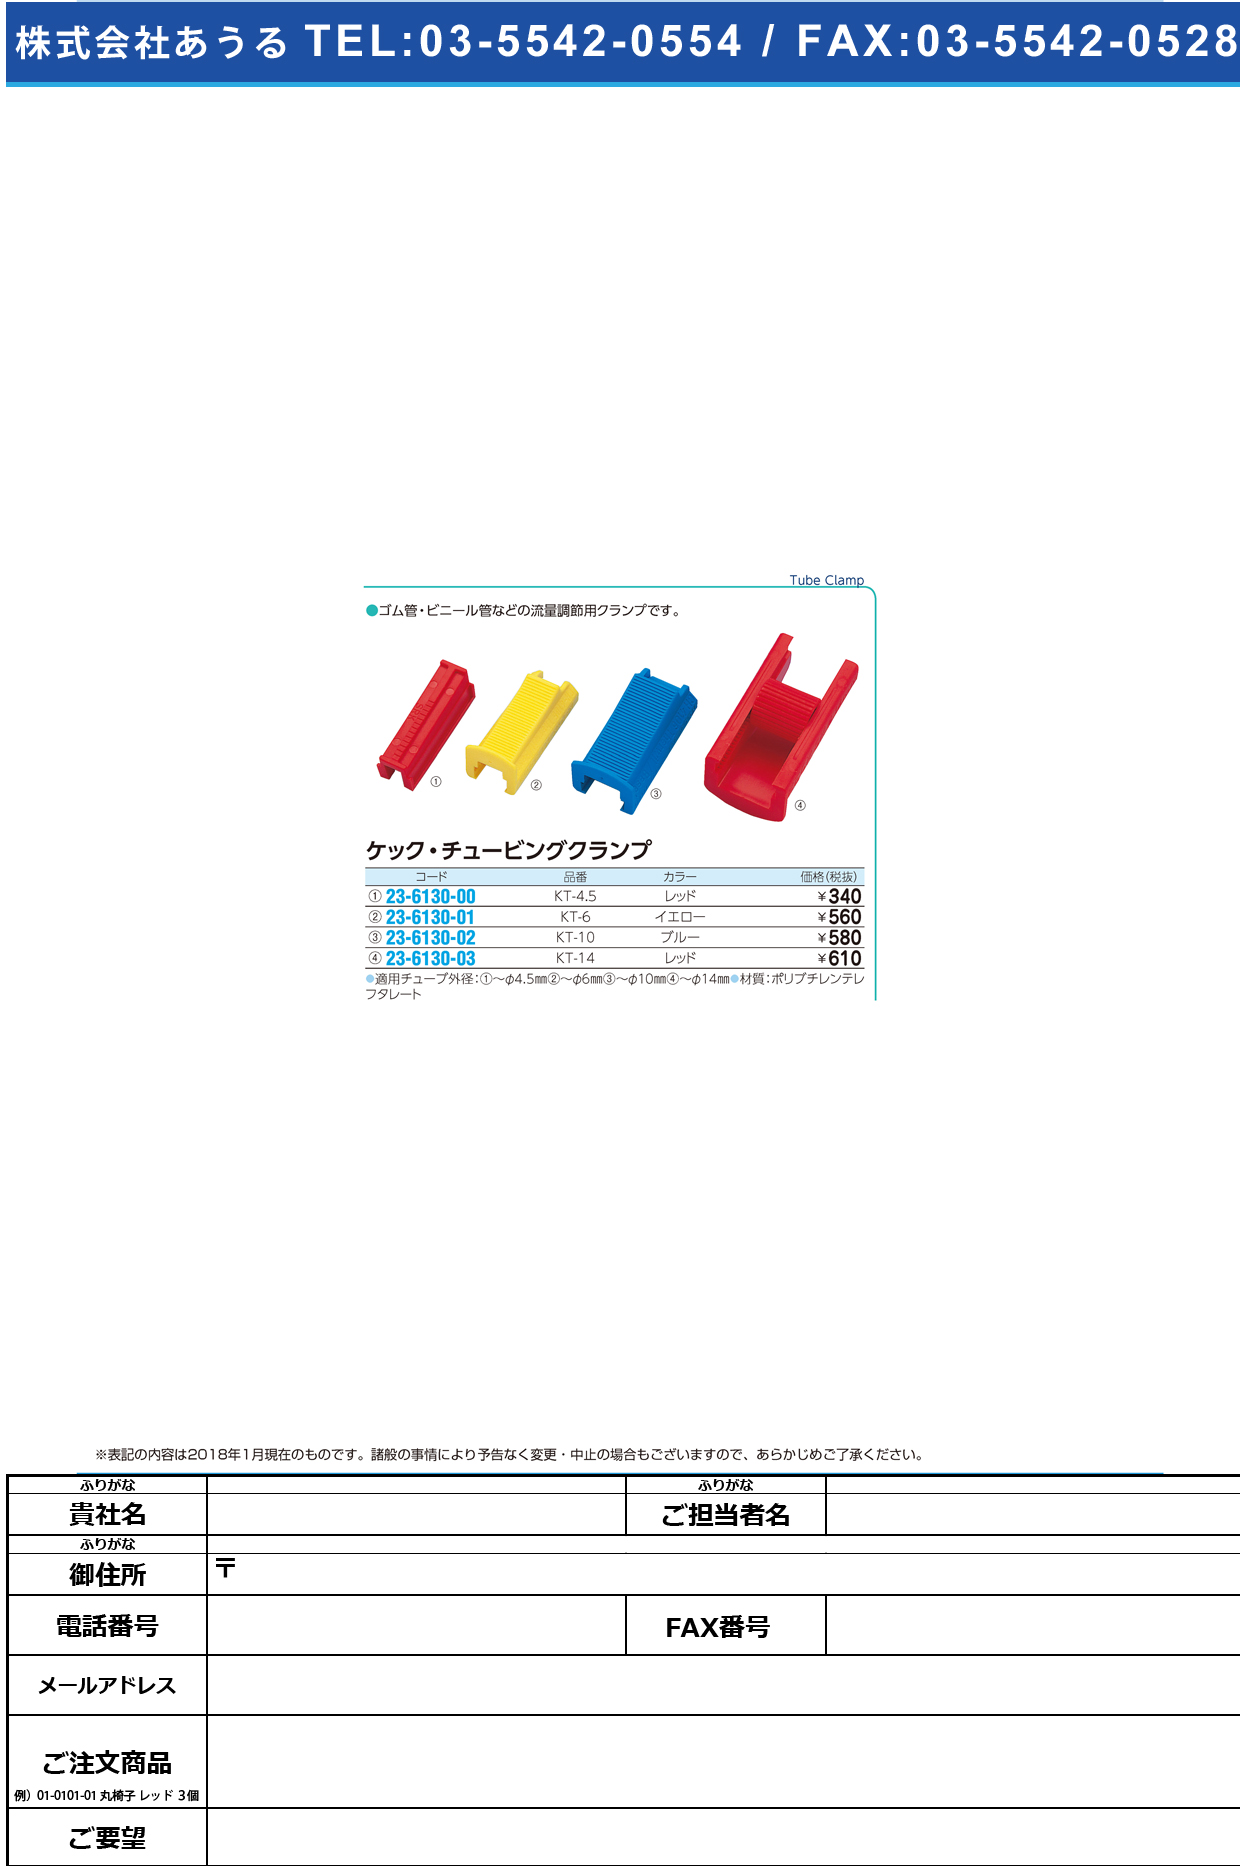 (23-6130-01)ケック・チュービングクランプ KT-6(ｲｴﾛｰ) ｹｯｸﾁｭｰﾋﾞﾝｸﾞｸﾗﾝﾌﾟ【1個単位】【2019年カタログ商品】